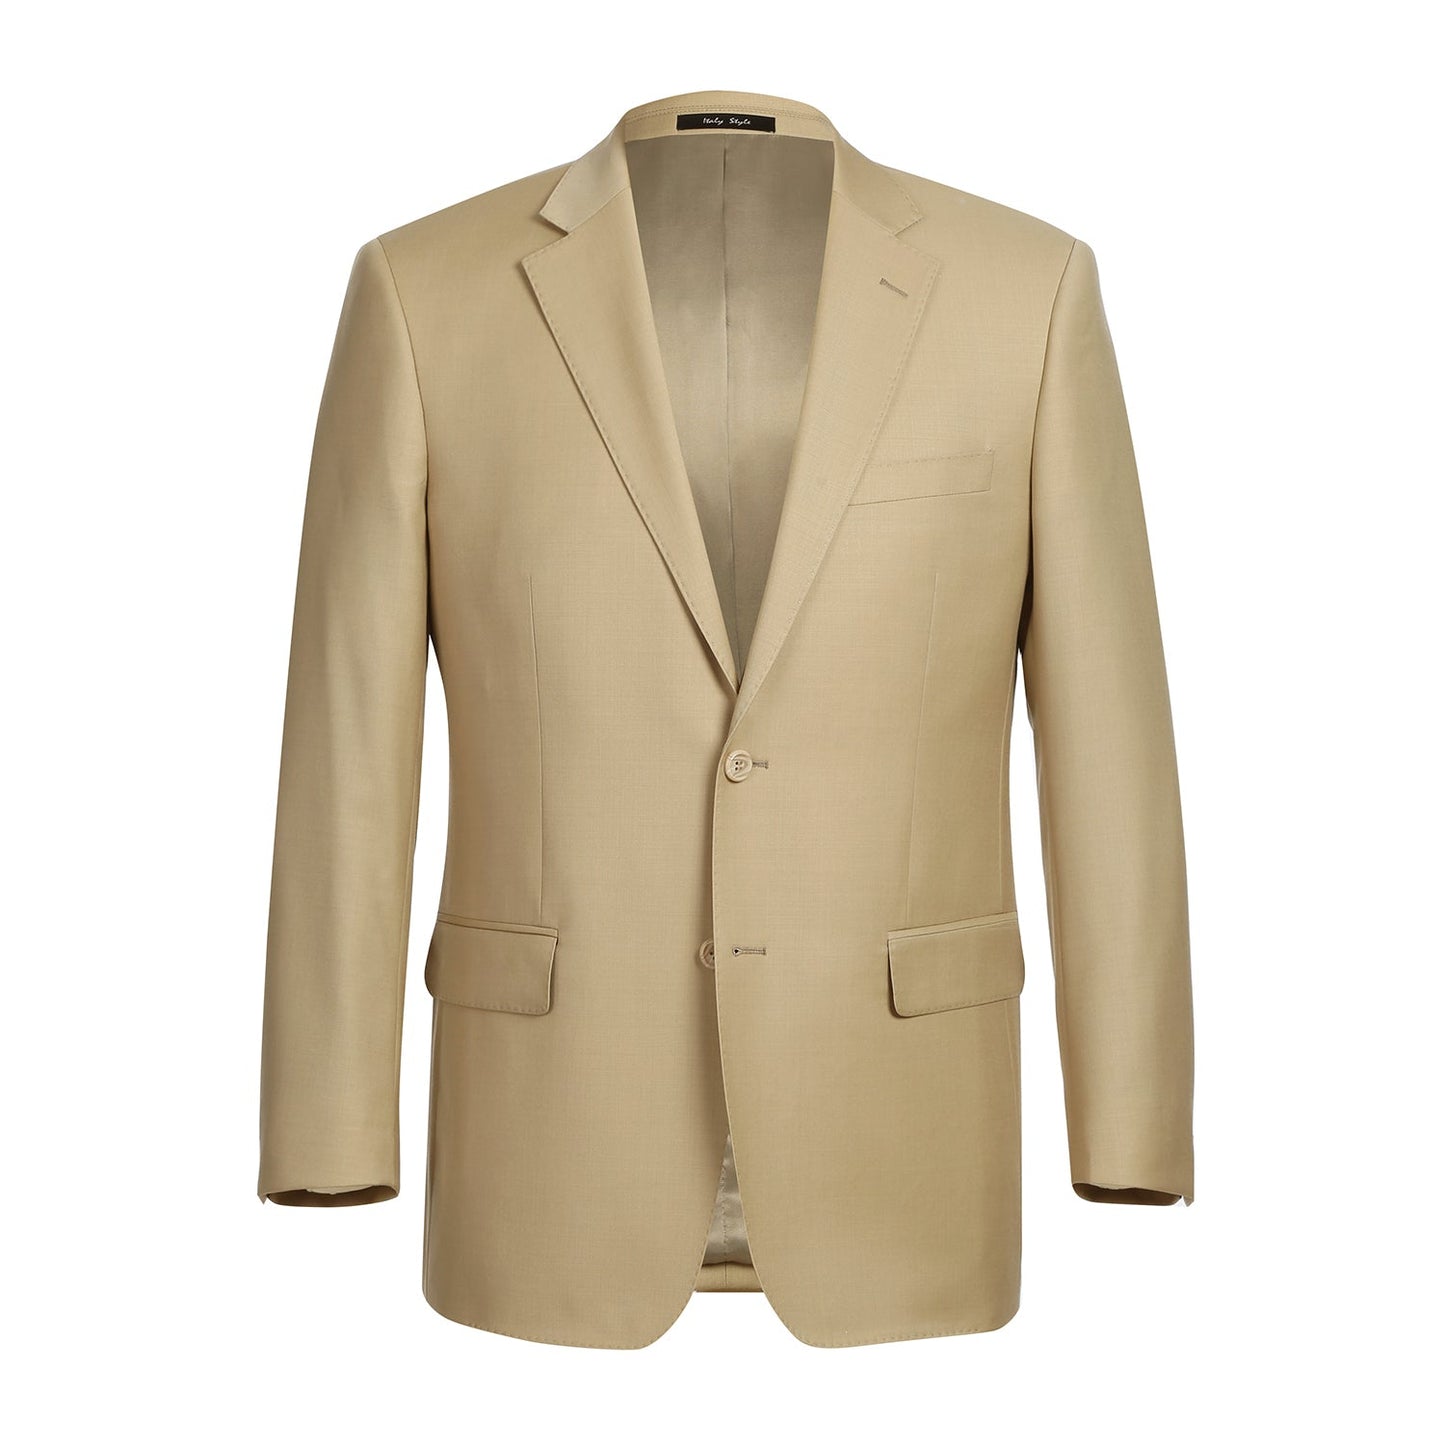 508-4 Men's 2-Piece Notch Lapel Tan 100% Wool Suit